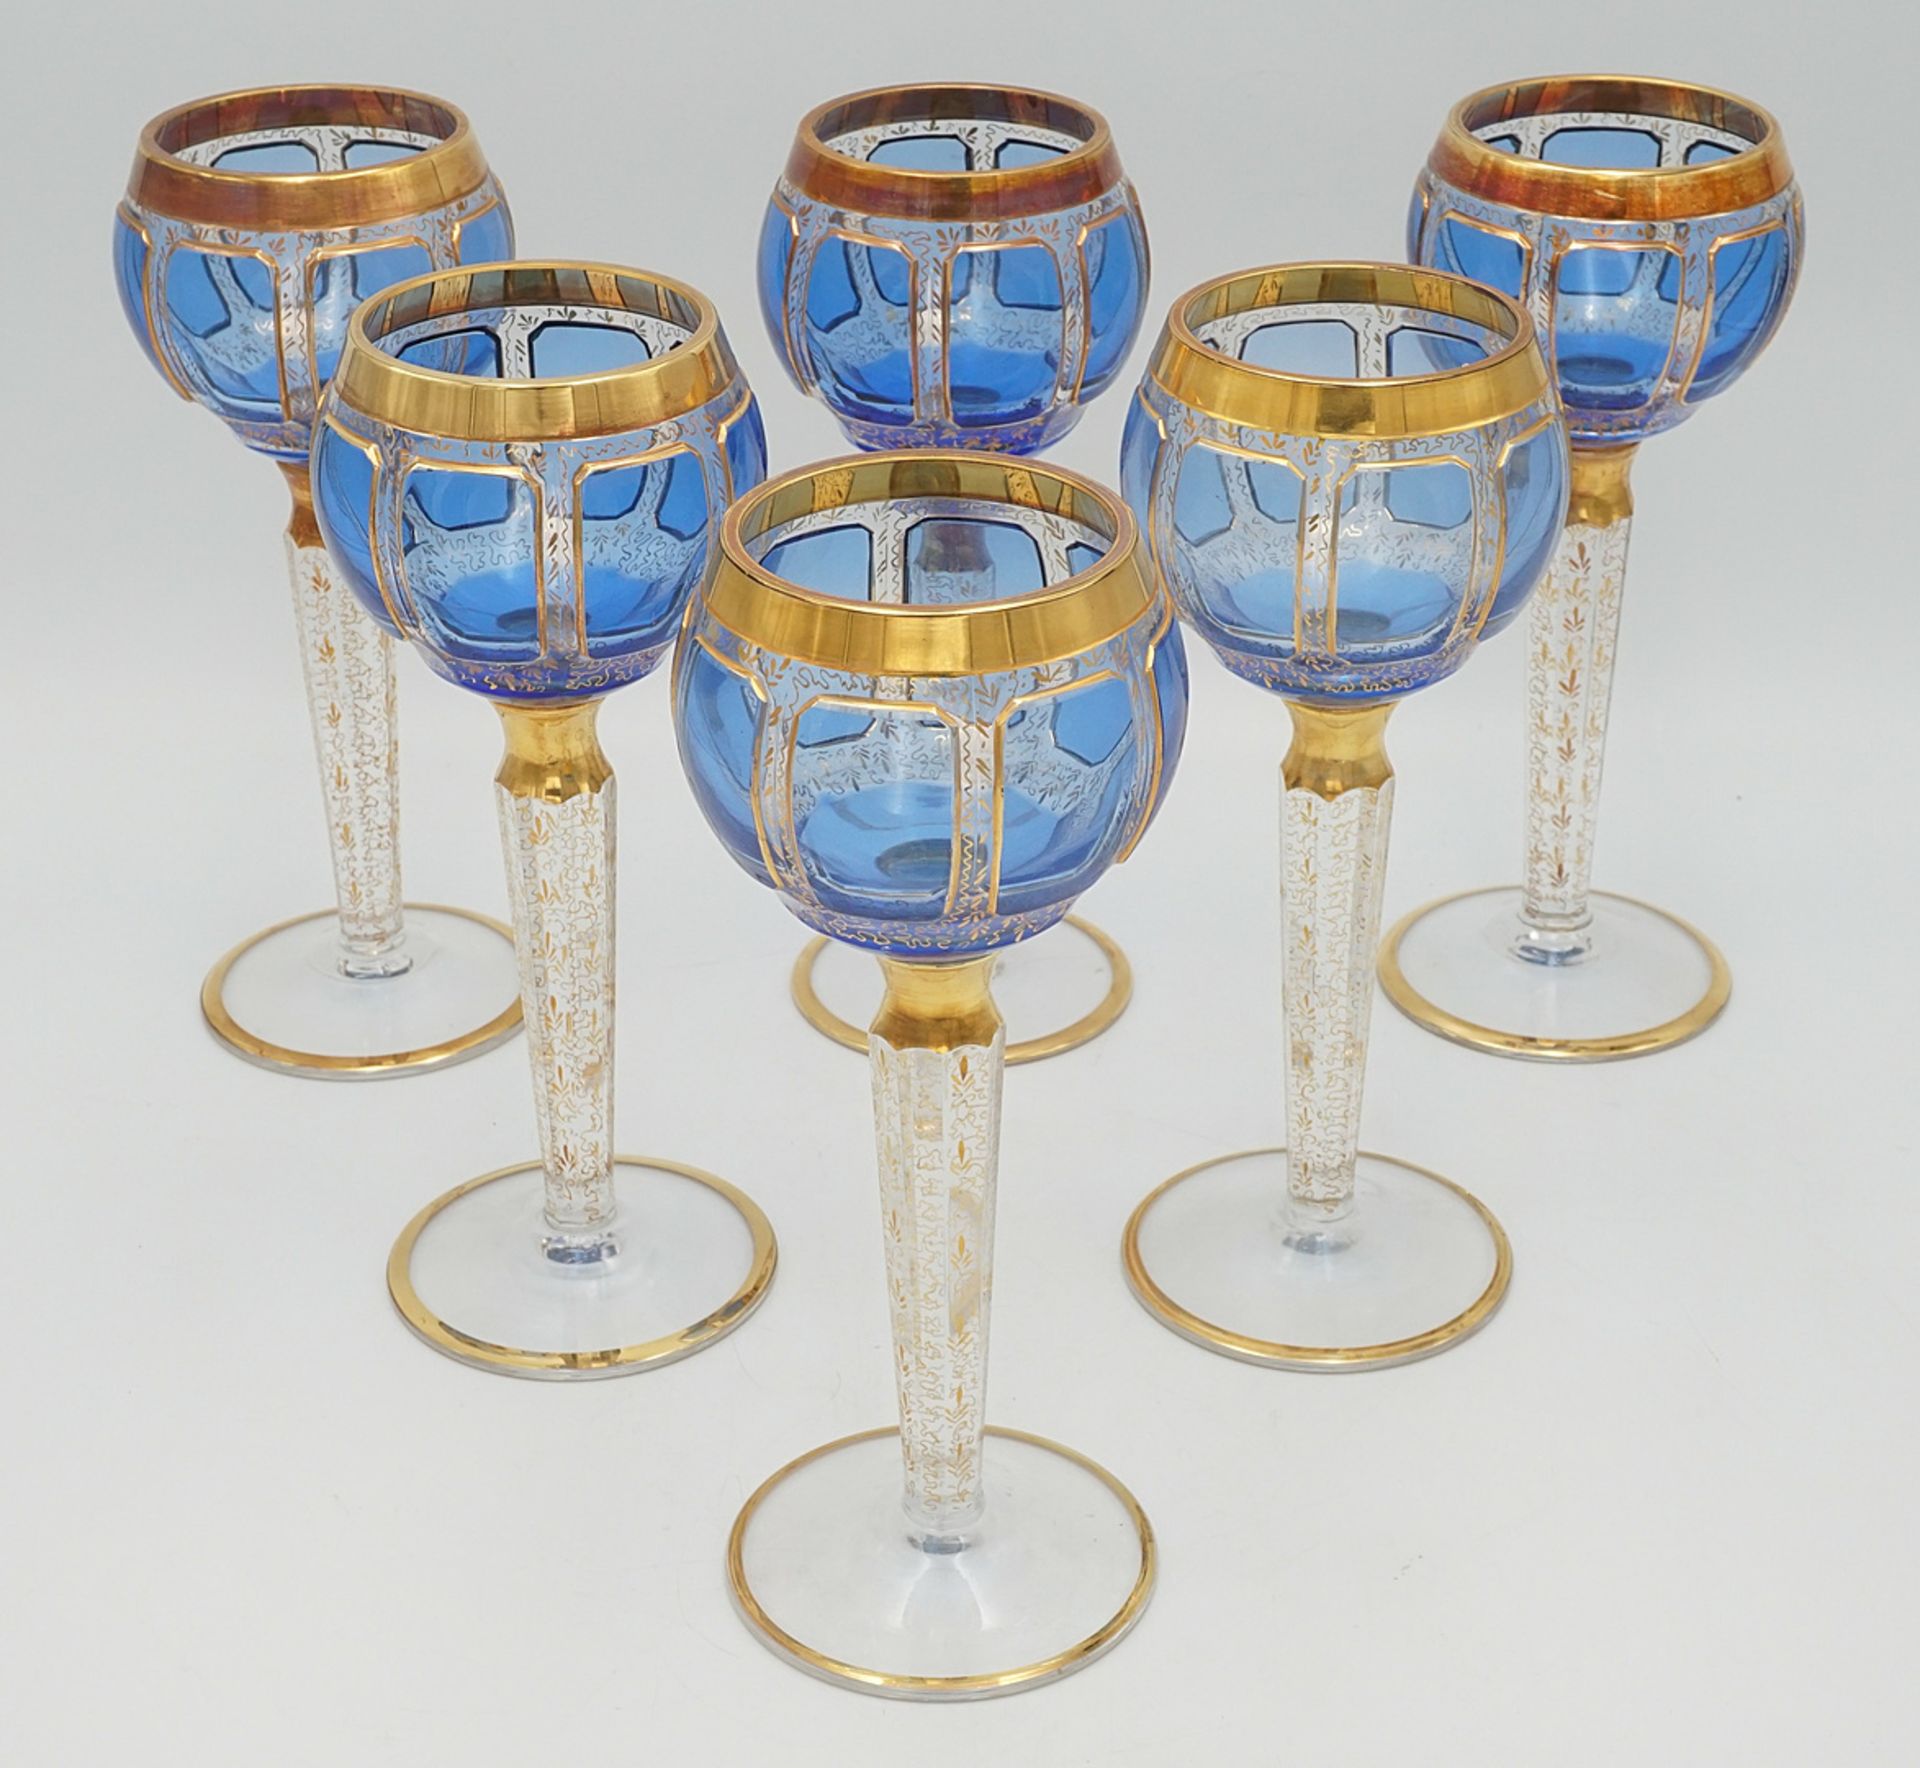 Six probably Steiner & Vogel Vohenstrauss magnificent wine glasses, around 1930